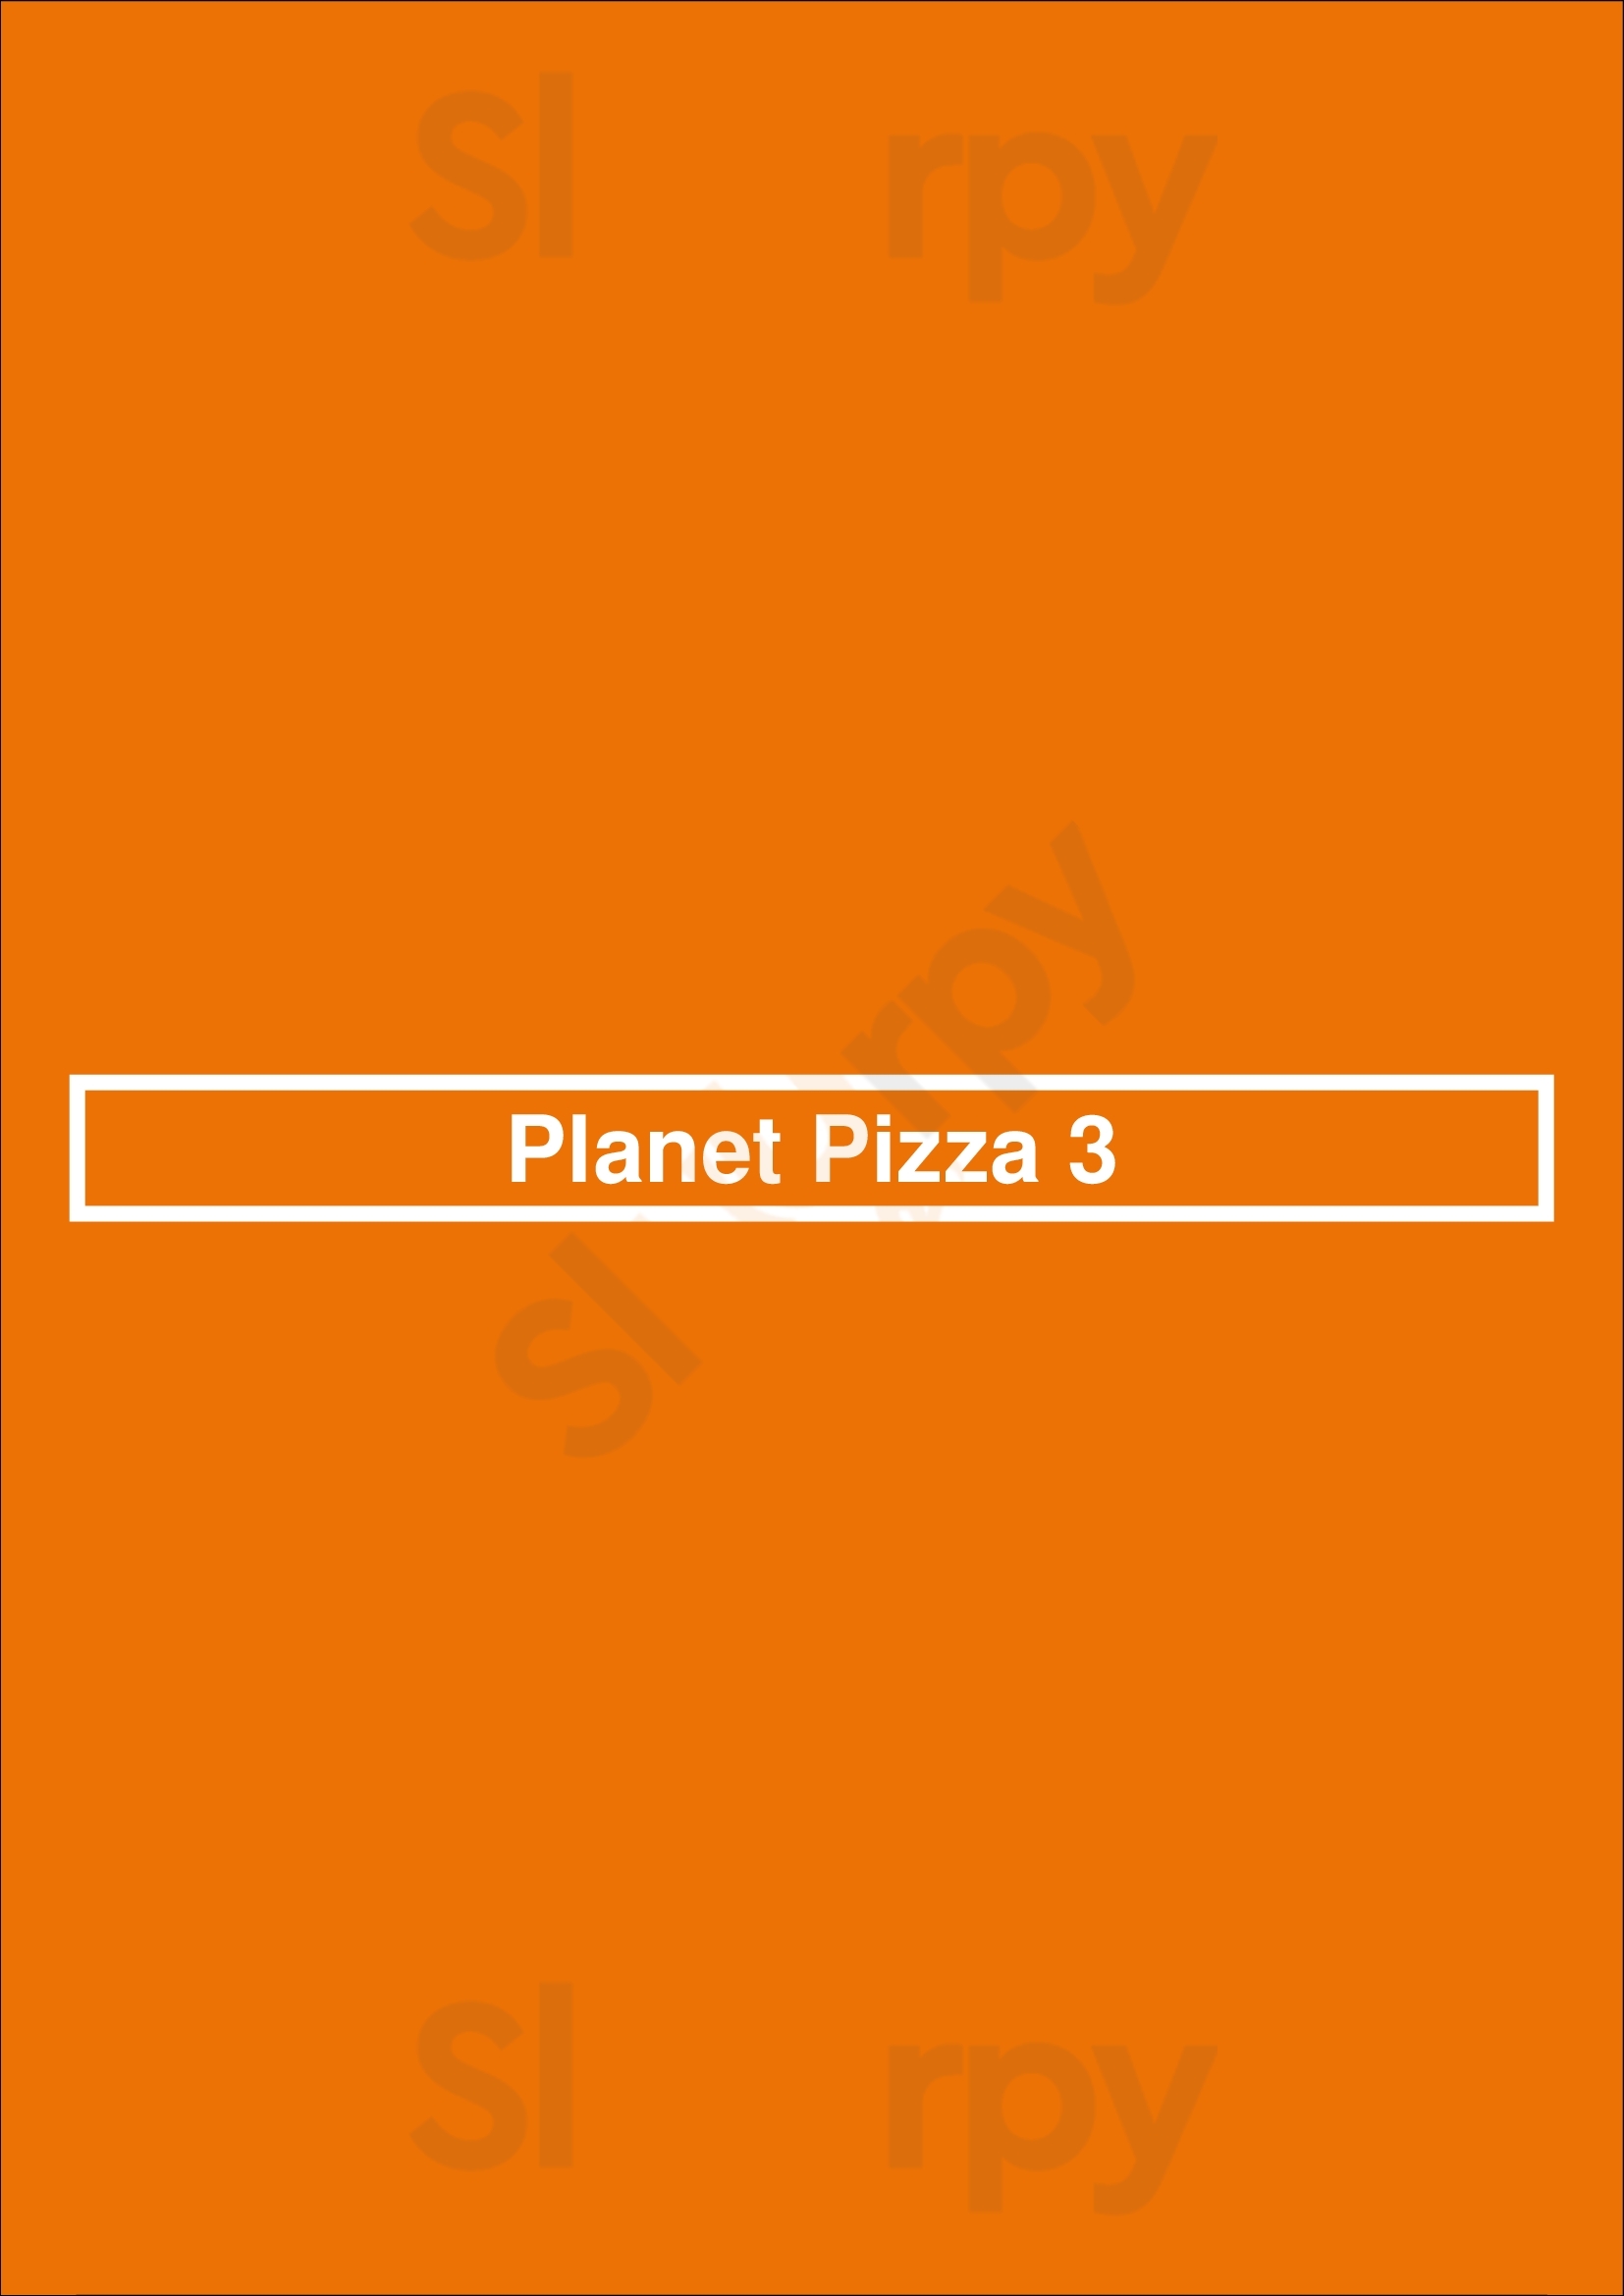 Planet Pizza 3 Nottingham Menu - 1